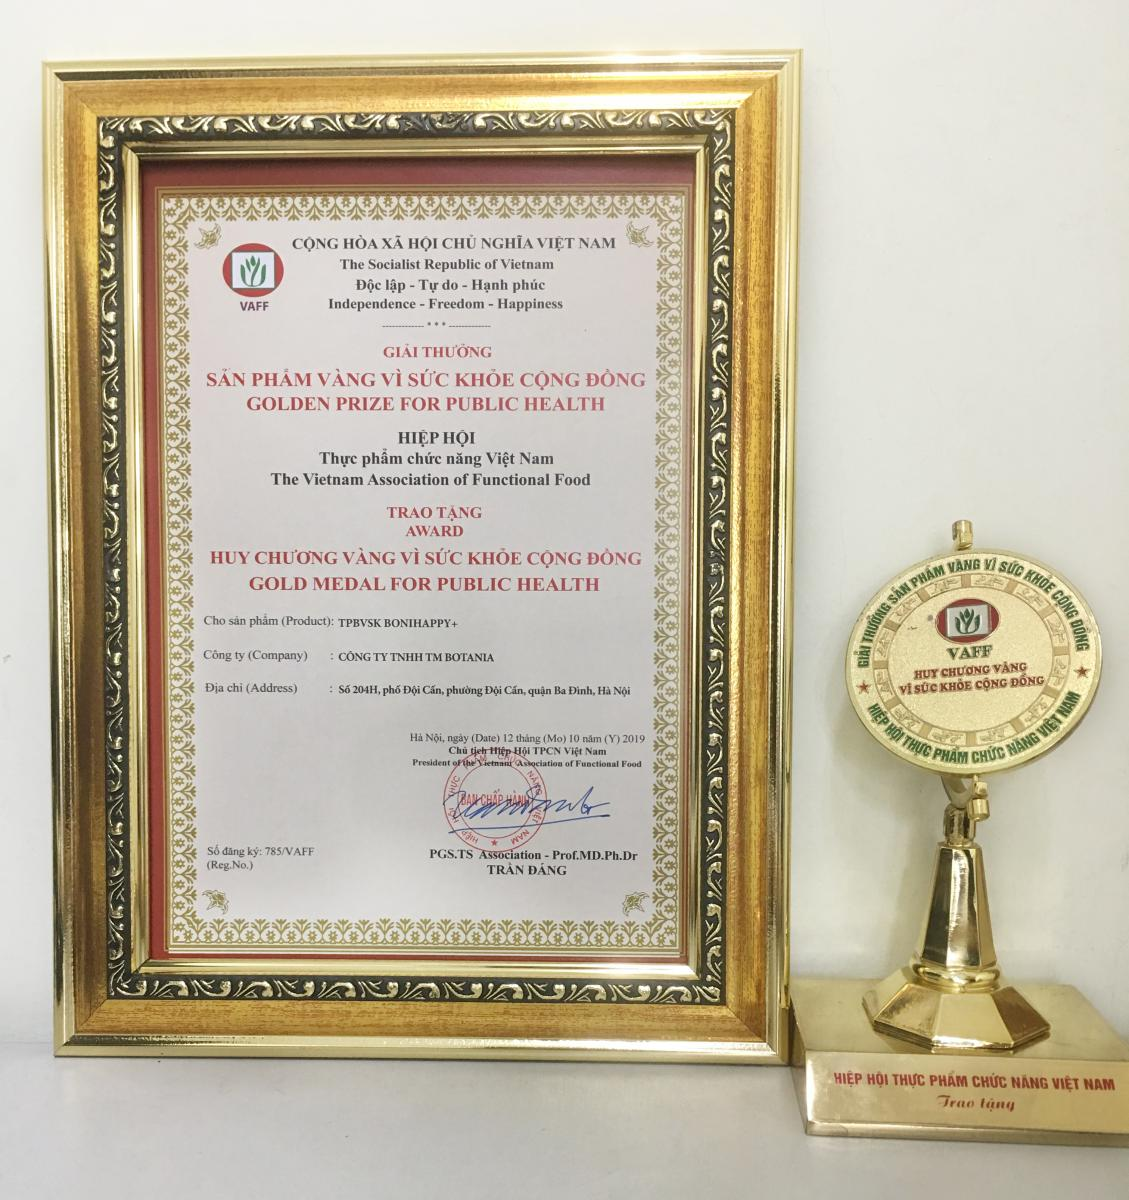 Cúp và giải thưởng “Sản phẩm vàng vì sức khỏe cộng đồng” năm 2019